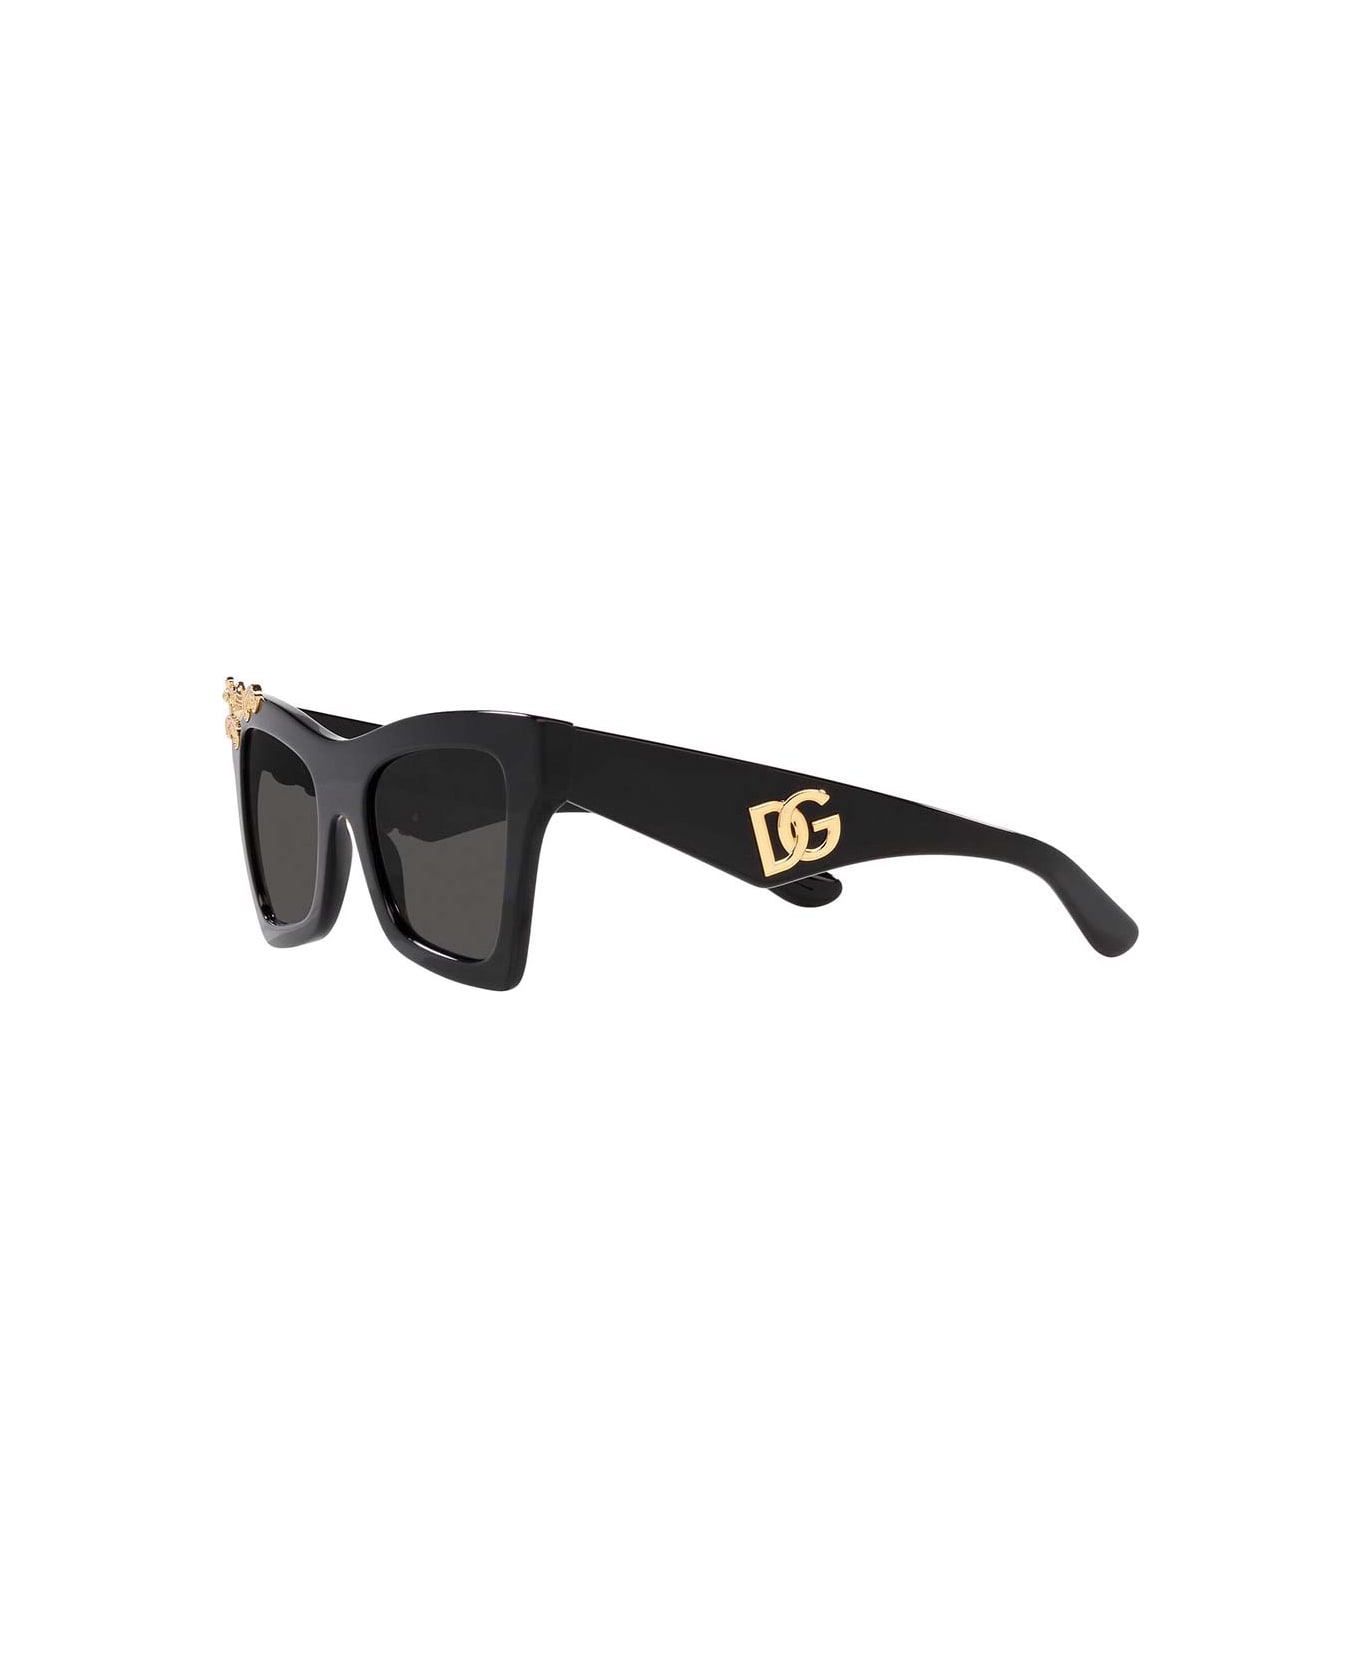 Pittsburgh Steelers Sunglasses Eyewear Microbag Eyewear Sunglasses Eyewear - Nero/Grigio